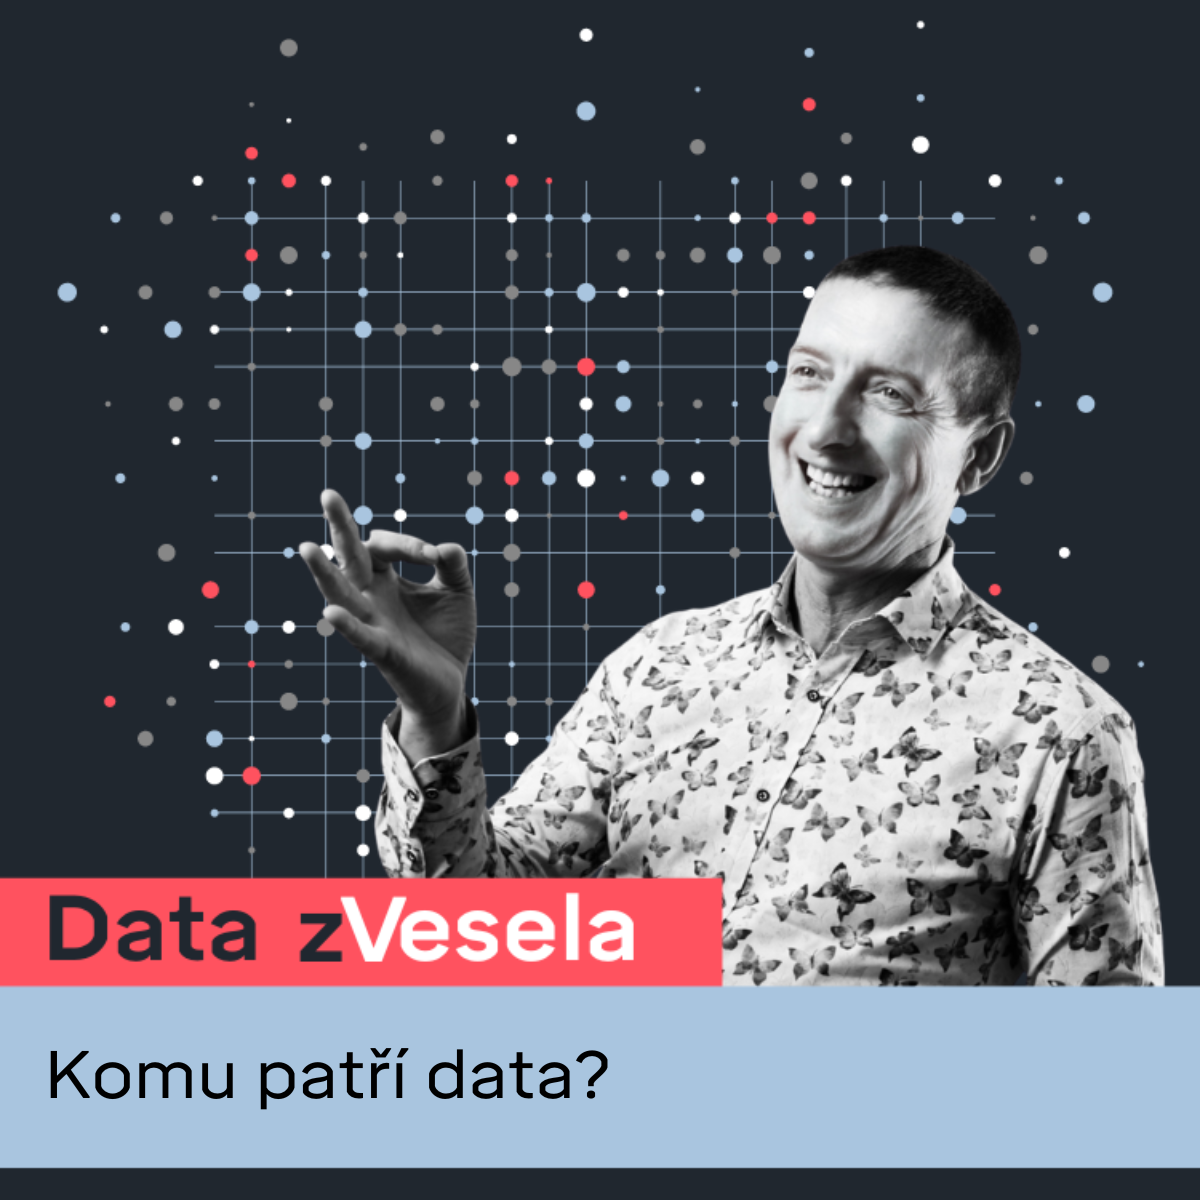 Data zVesela: Komu patří data?